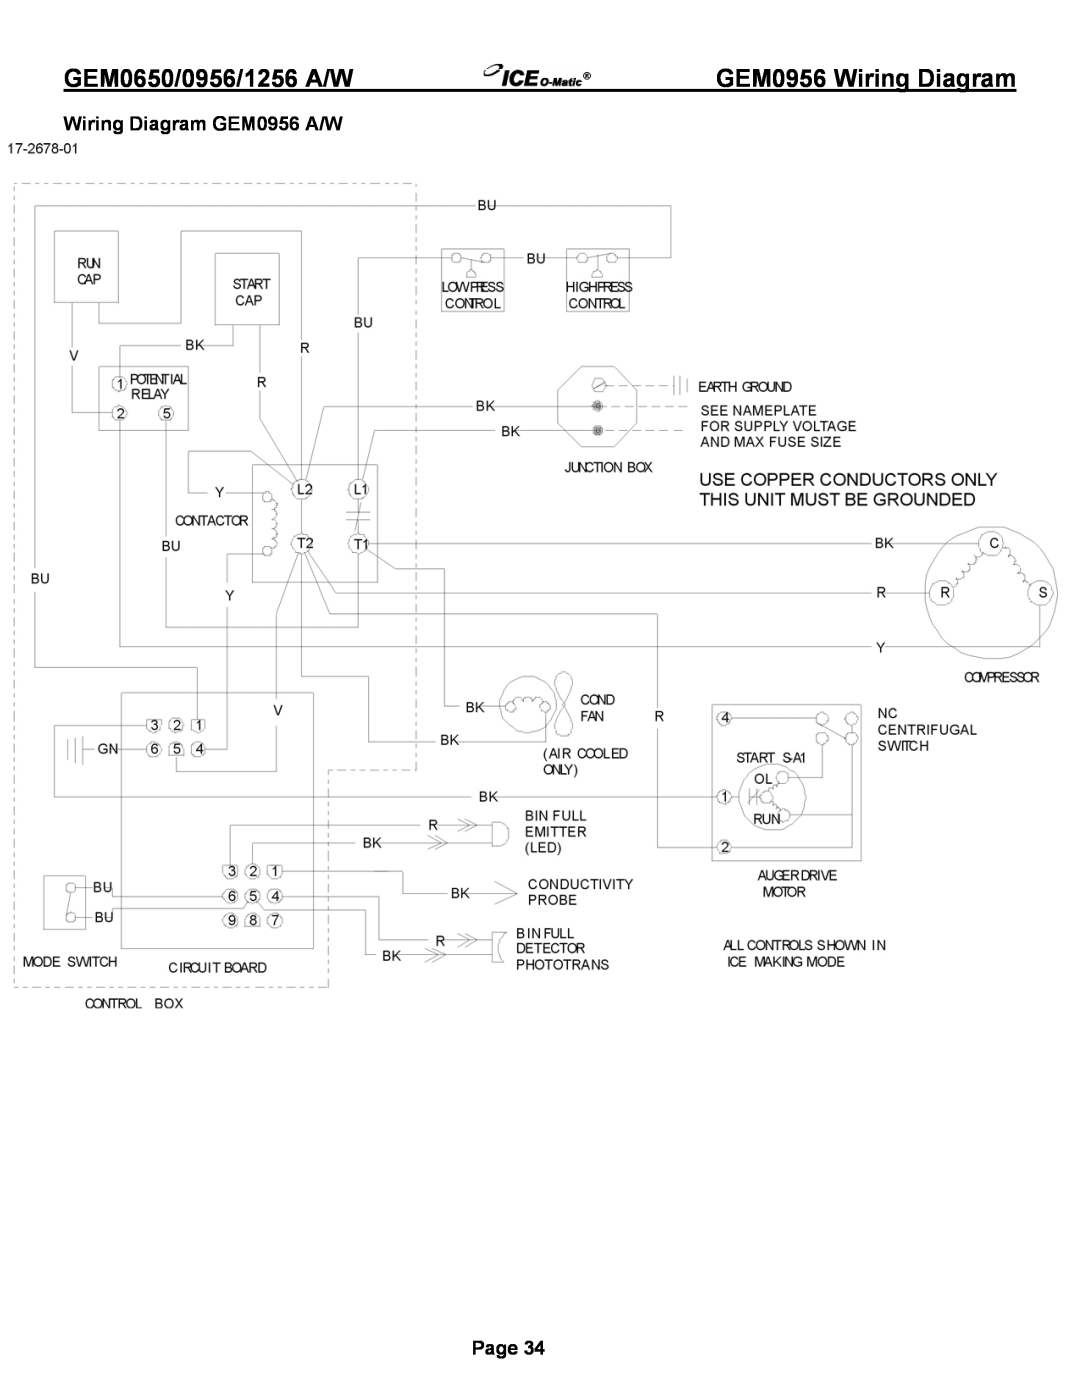 Ice-O-Matic GEM1256A/W, GEM0956A/W GEM0956 Wiring Diagram, Wiring Diagram GEM0956 A/W, GEM0650/0956/1256 A/W, Page 